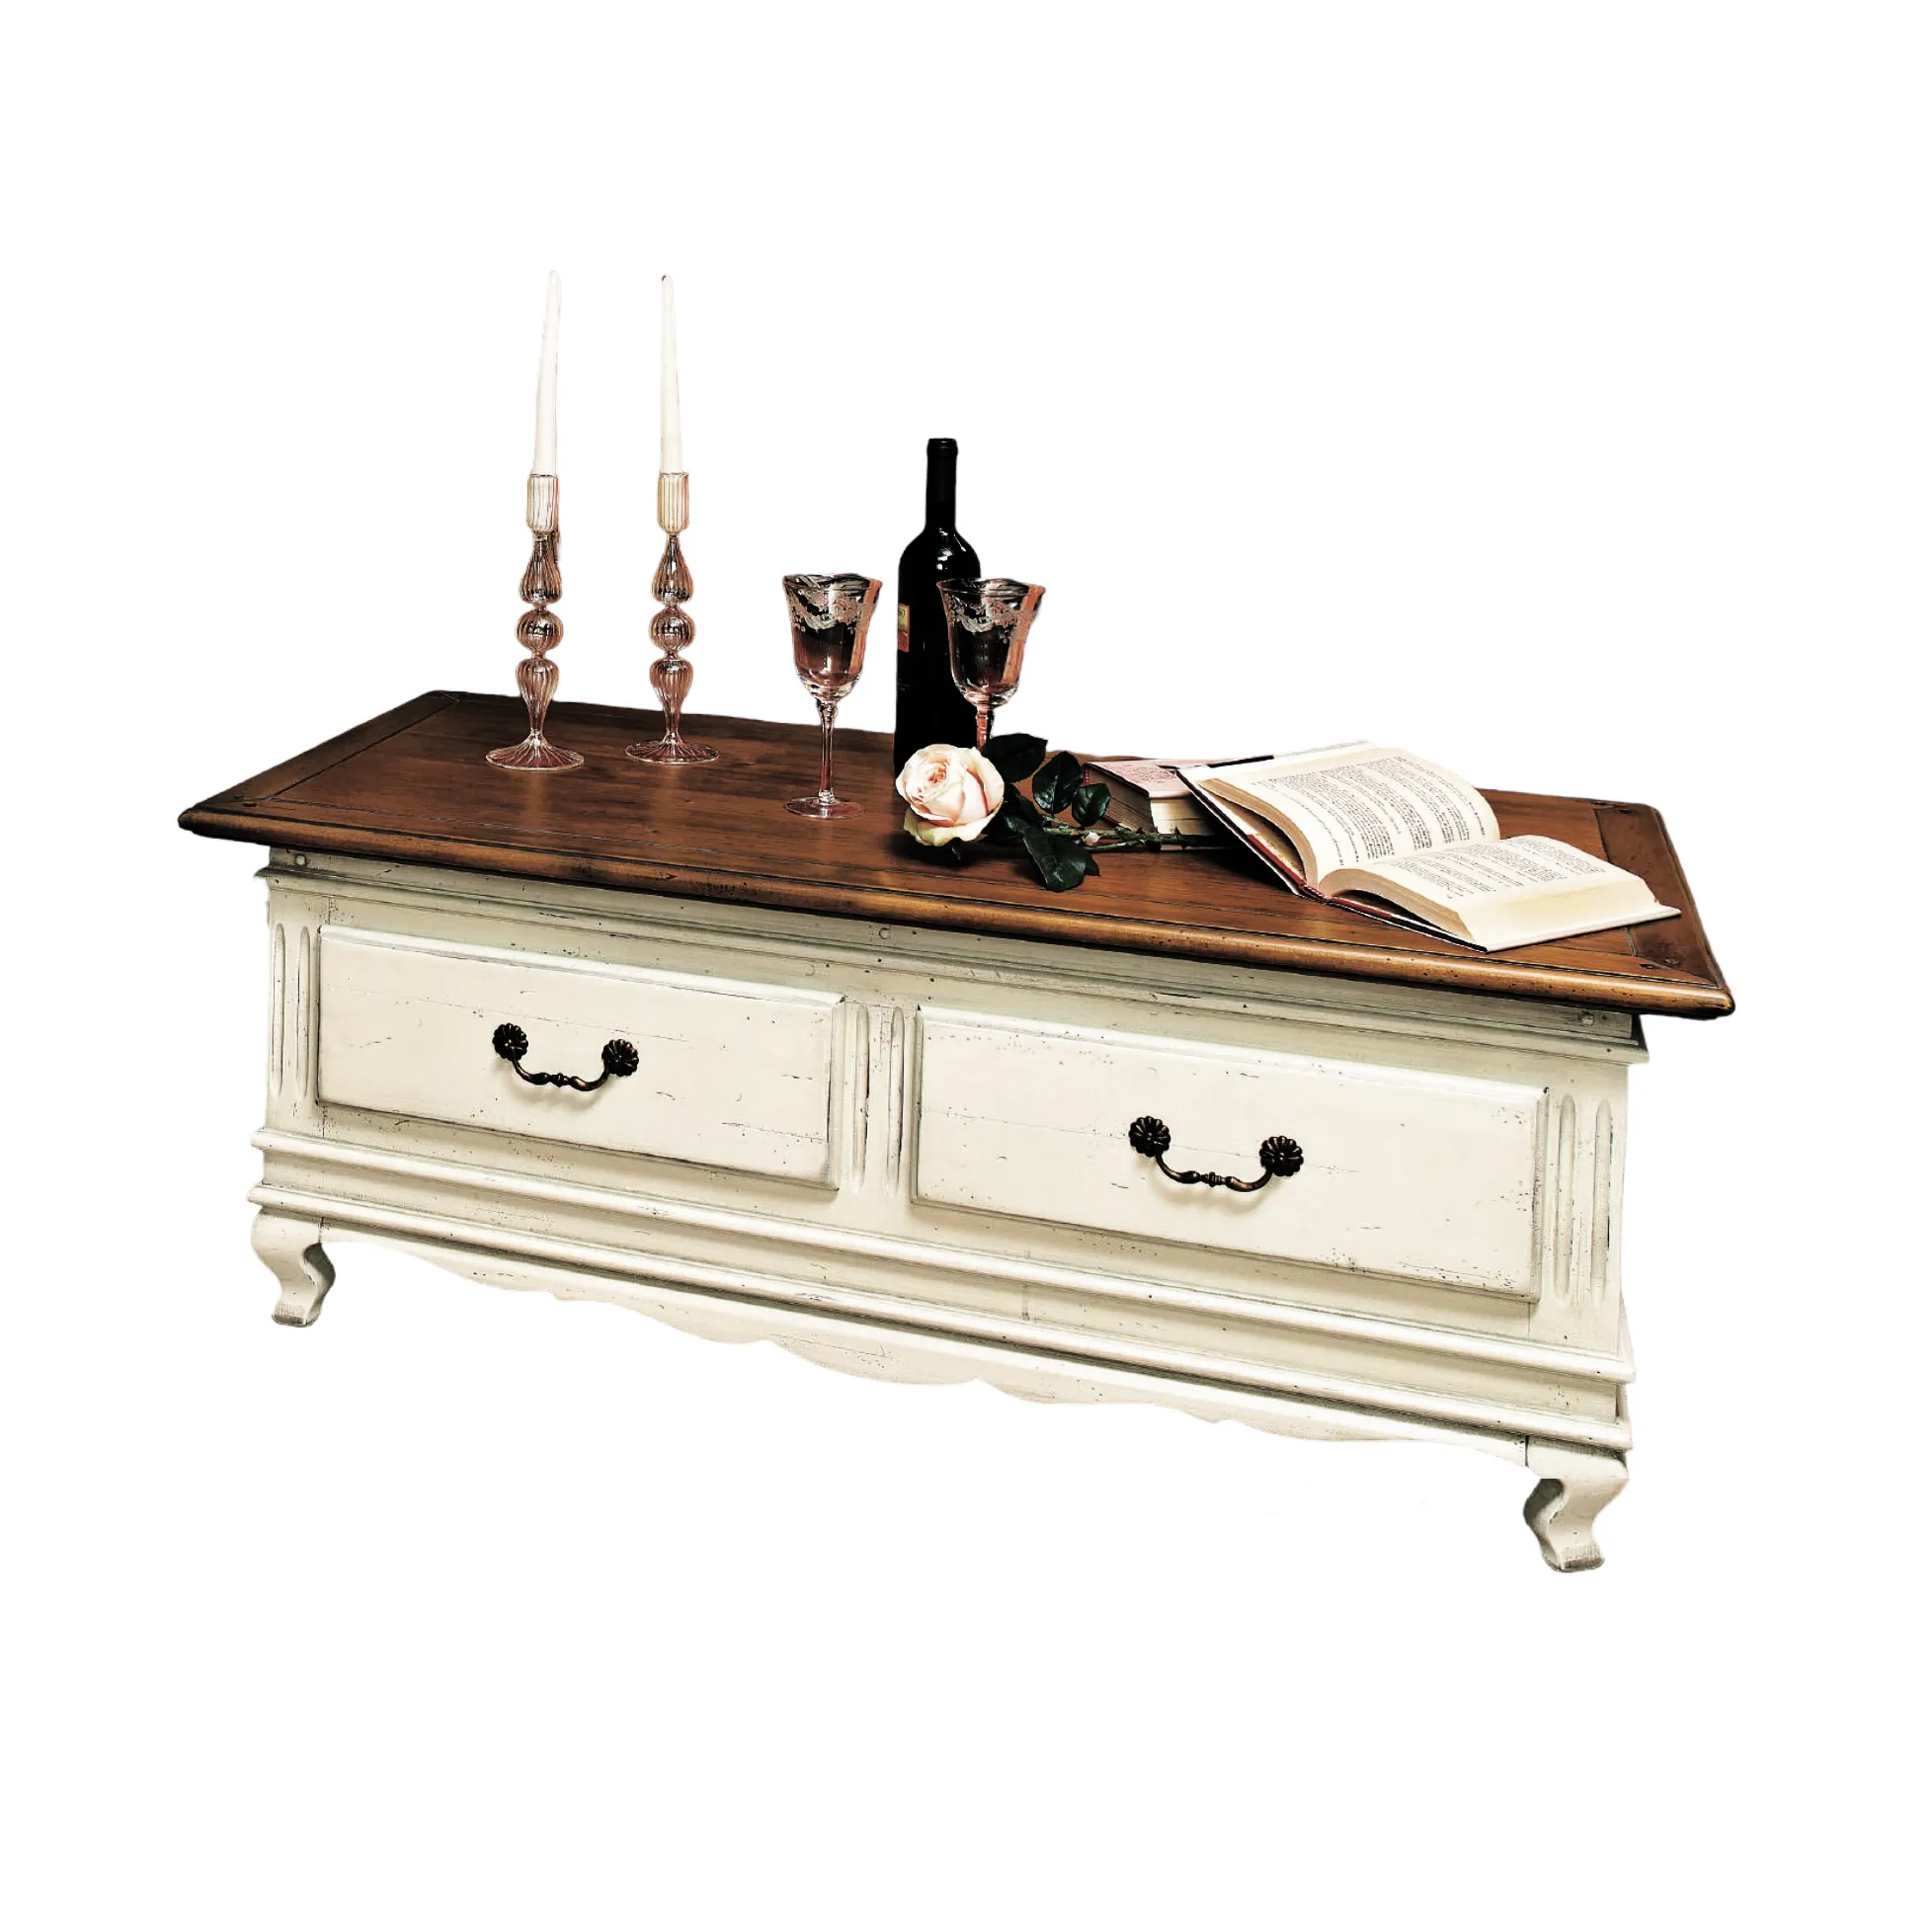 Andmade-mesa de centro de madera de calidad, mueble de lujo estilo rench con dos cajones y estante de cristal, 120 D 60 H 45